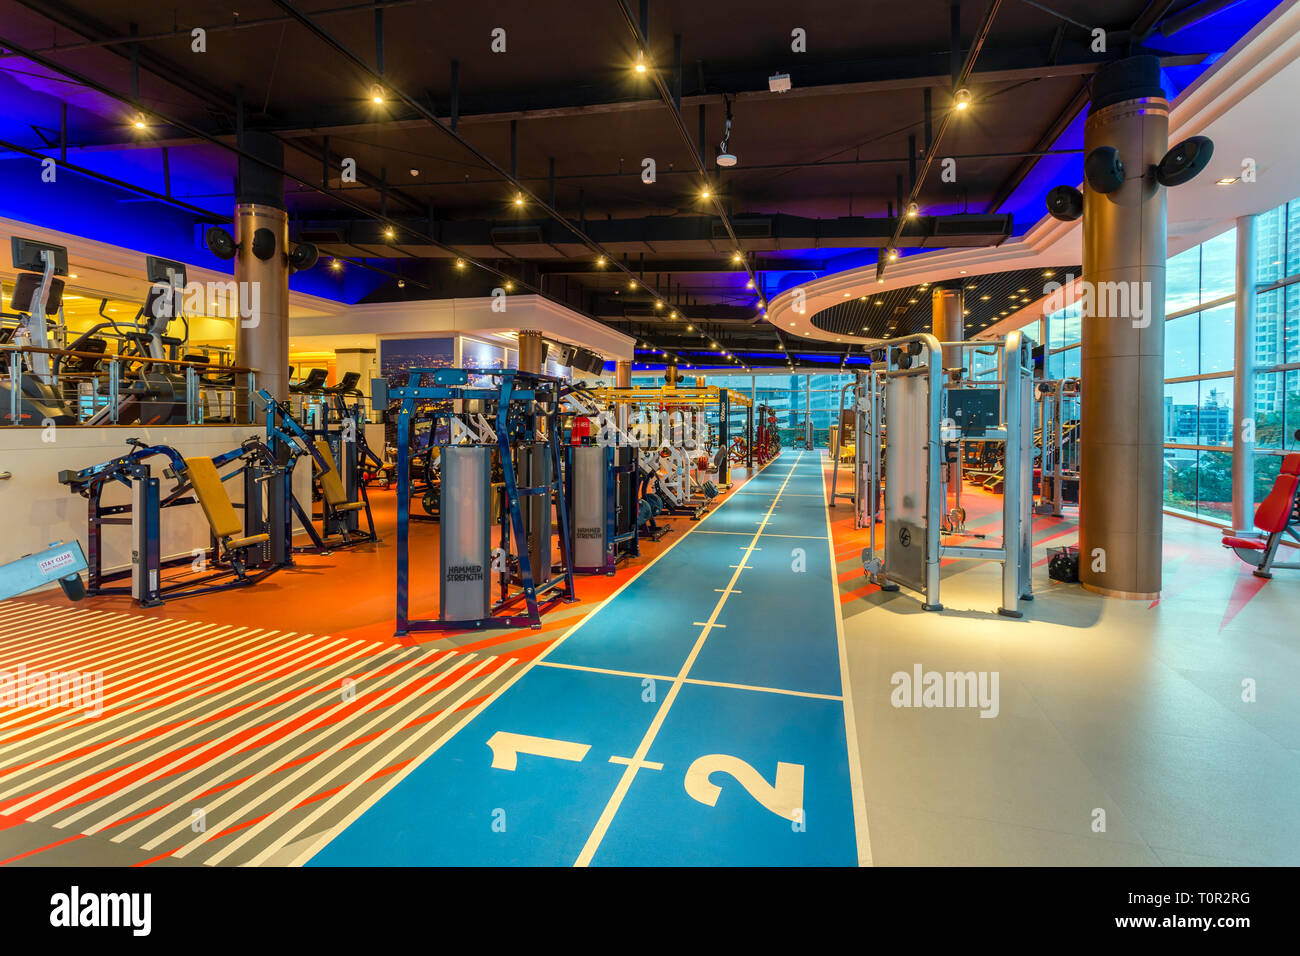 Interior of Cascade Club and Spa health club fitness centre ...